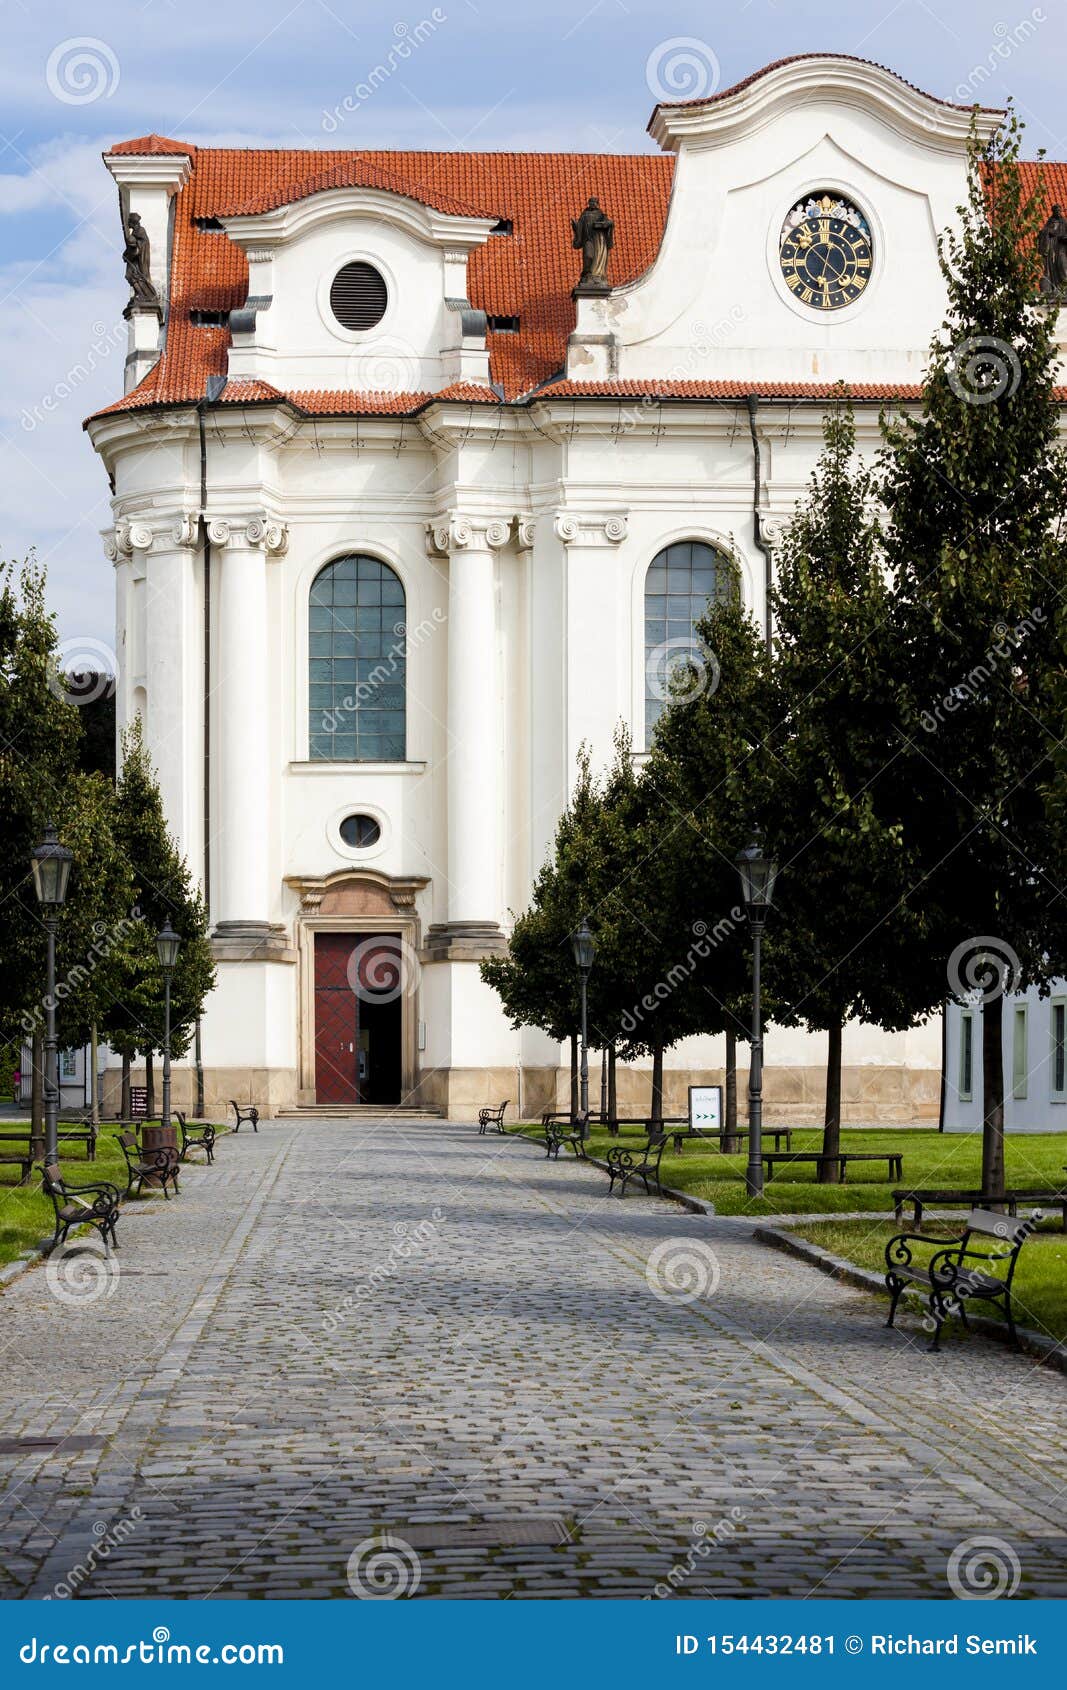 brevnov monastery, prague, czech republic